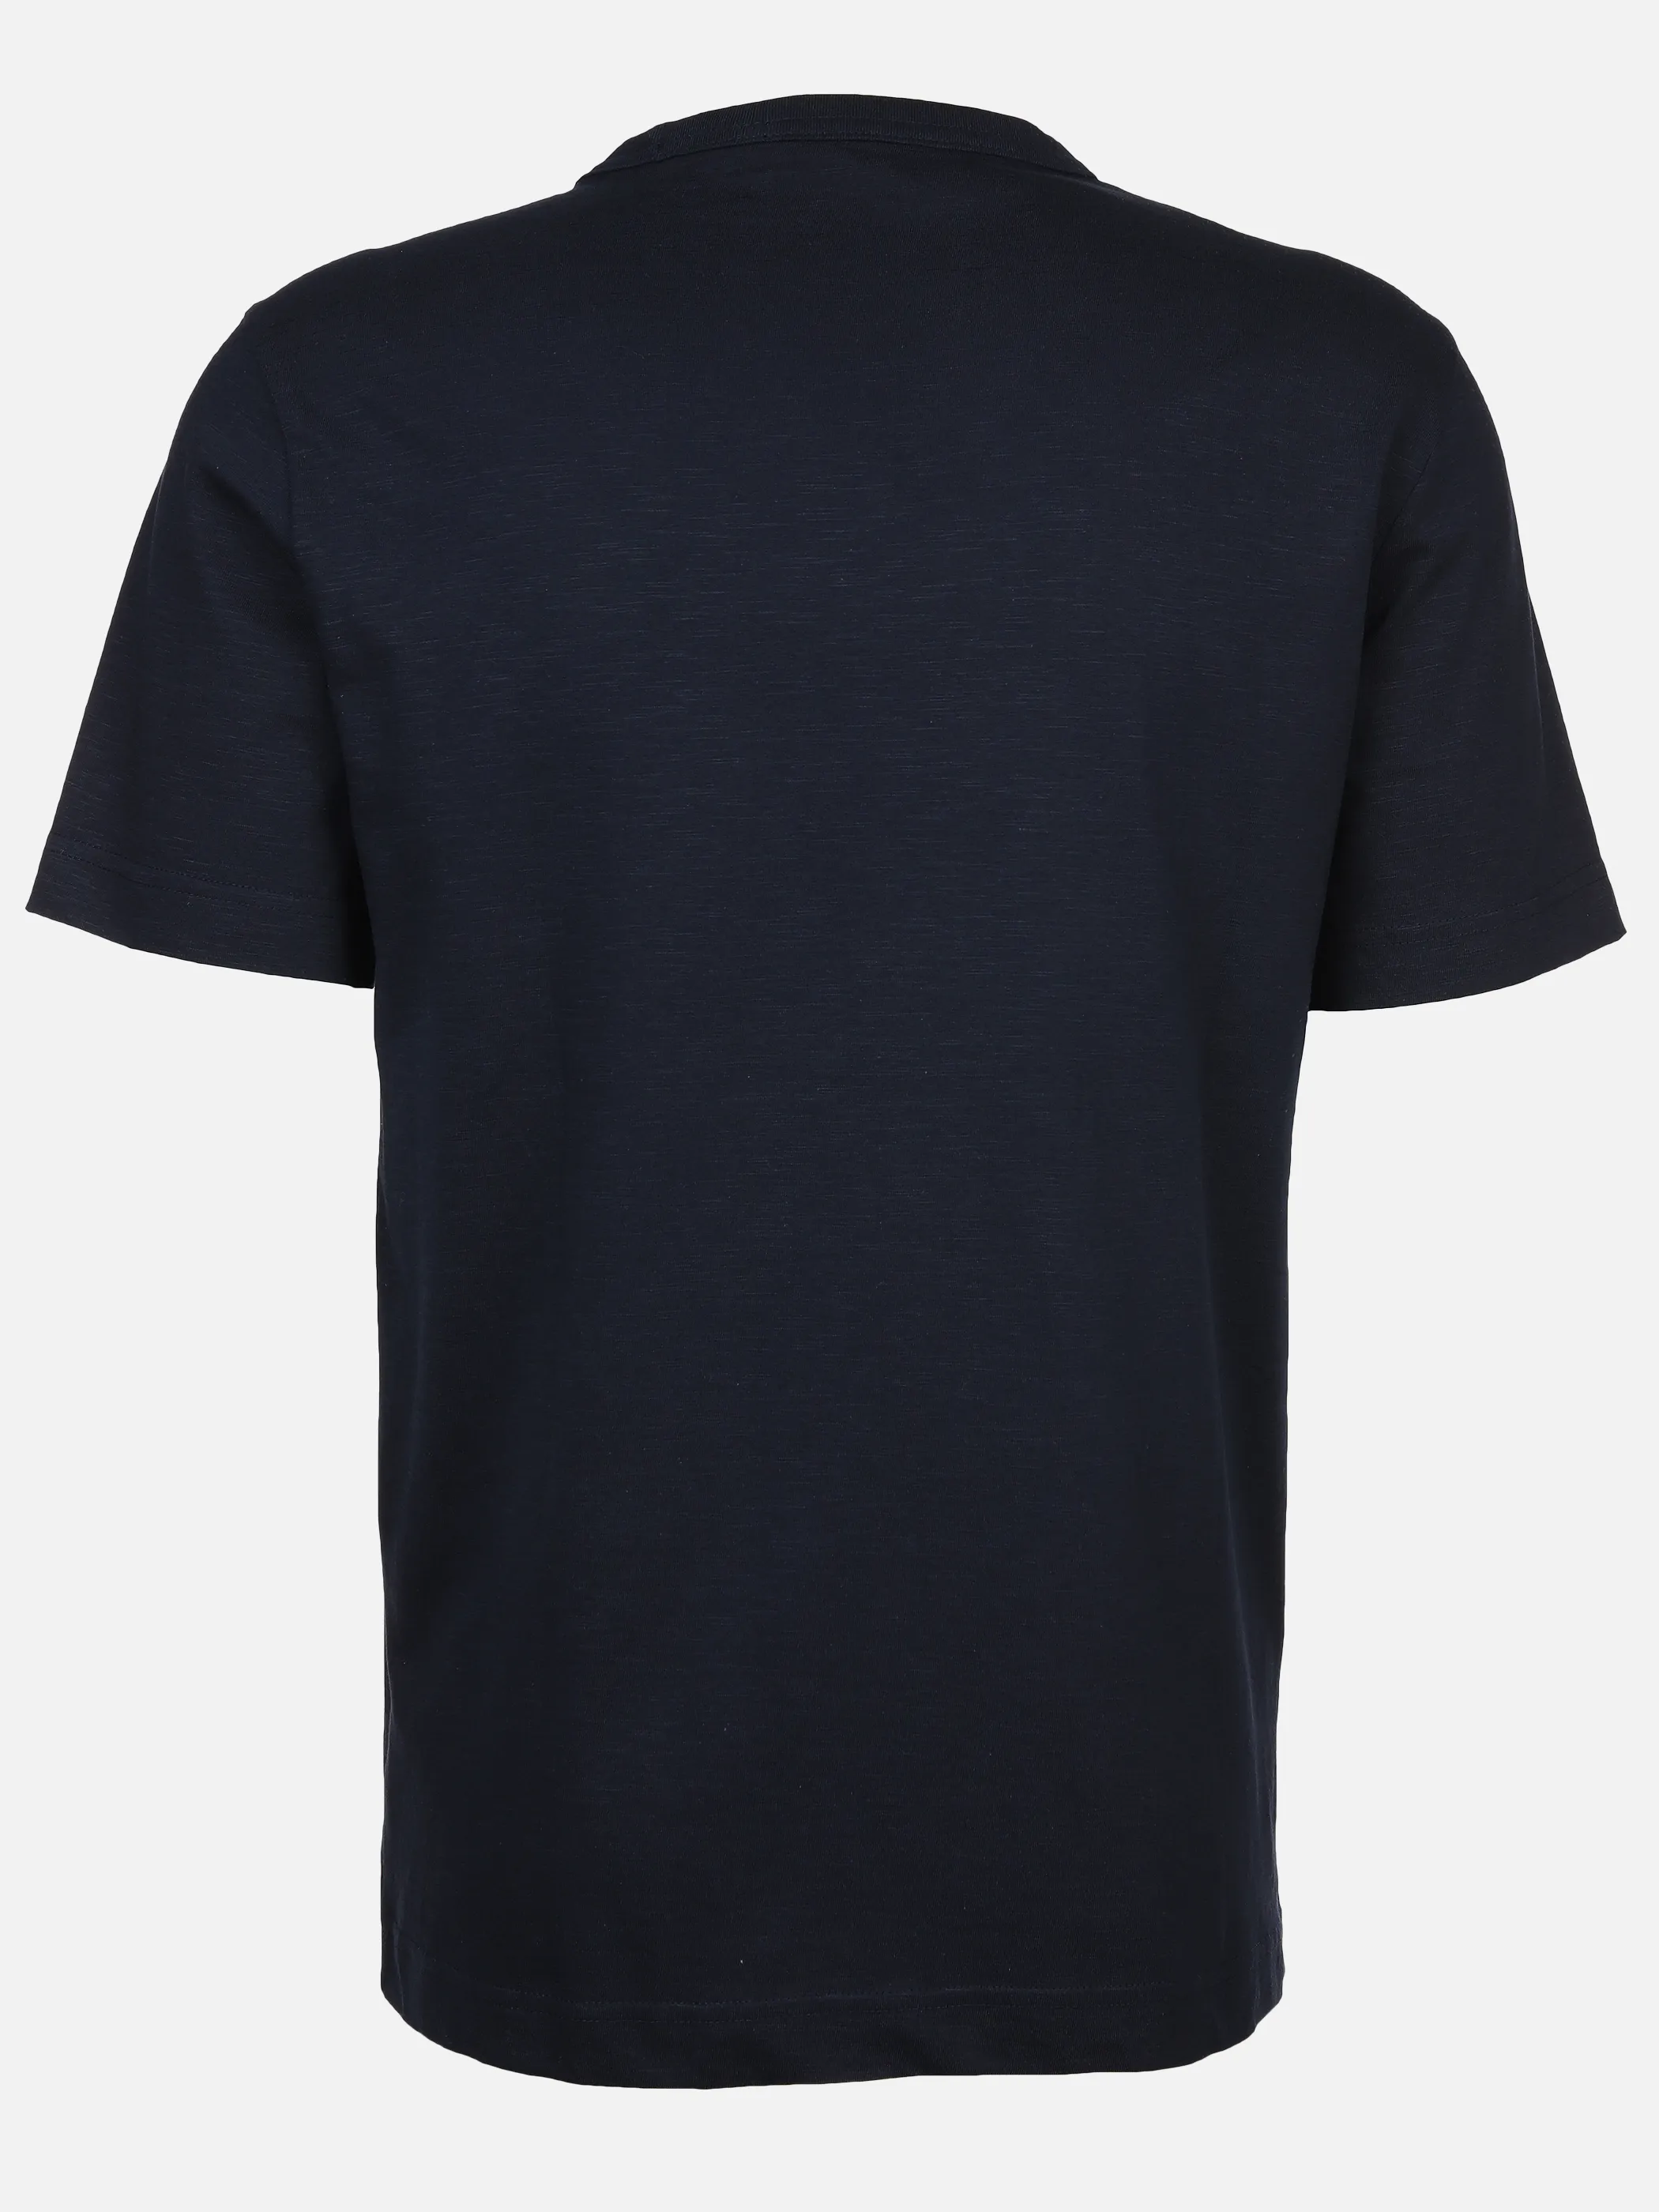 Tom Tailor 1040821 NOS printed t-shirt Logo Blau 890933 10668 2